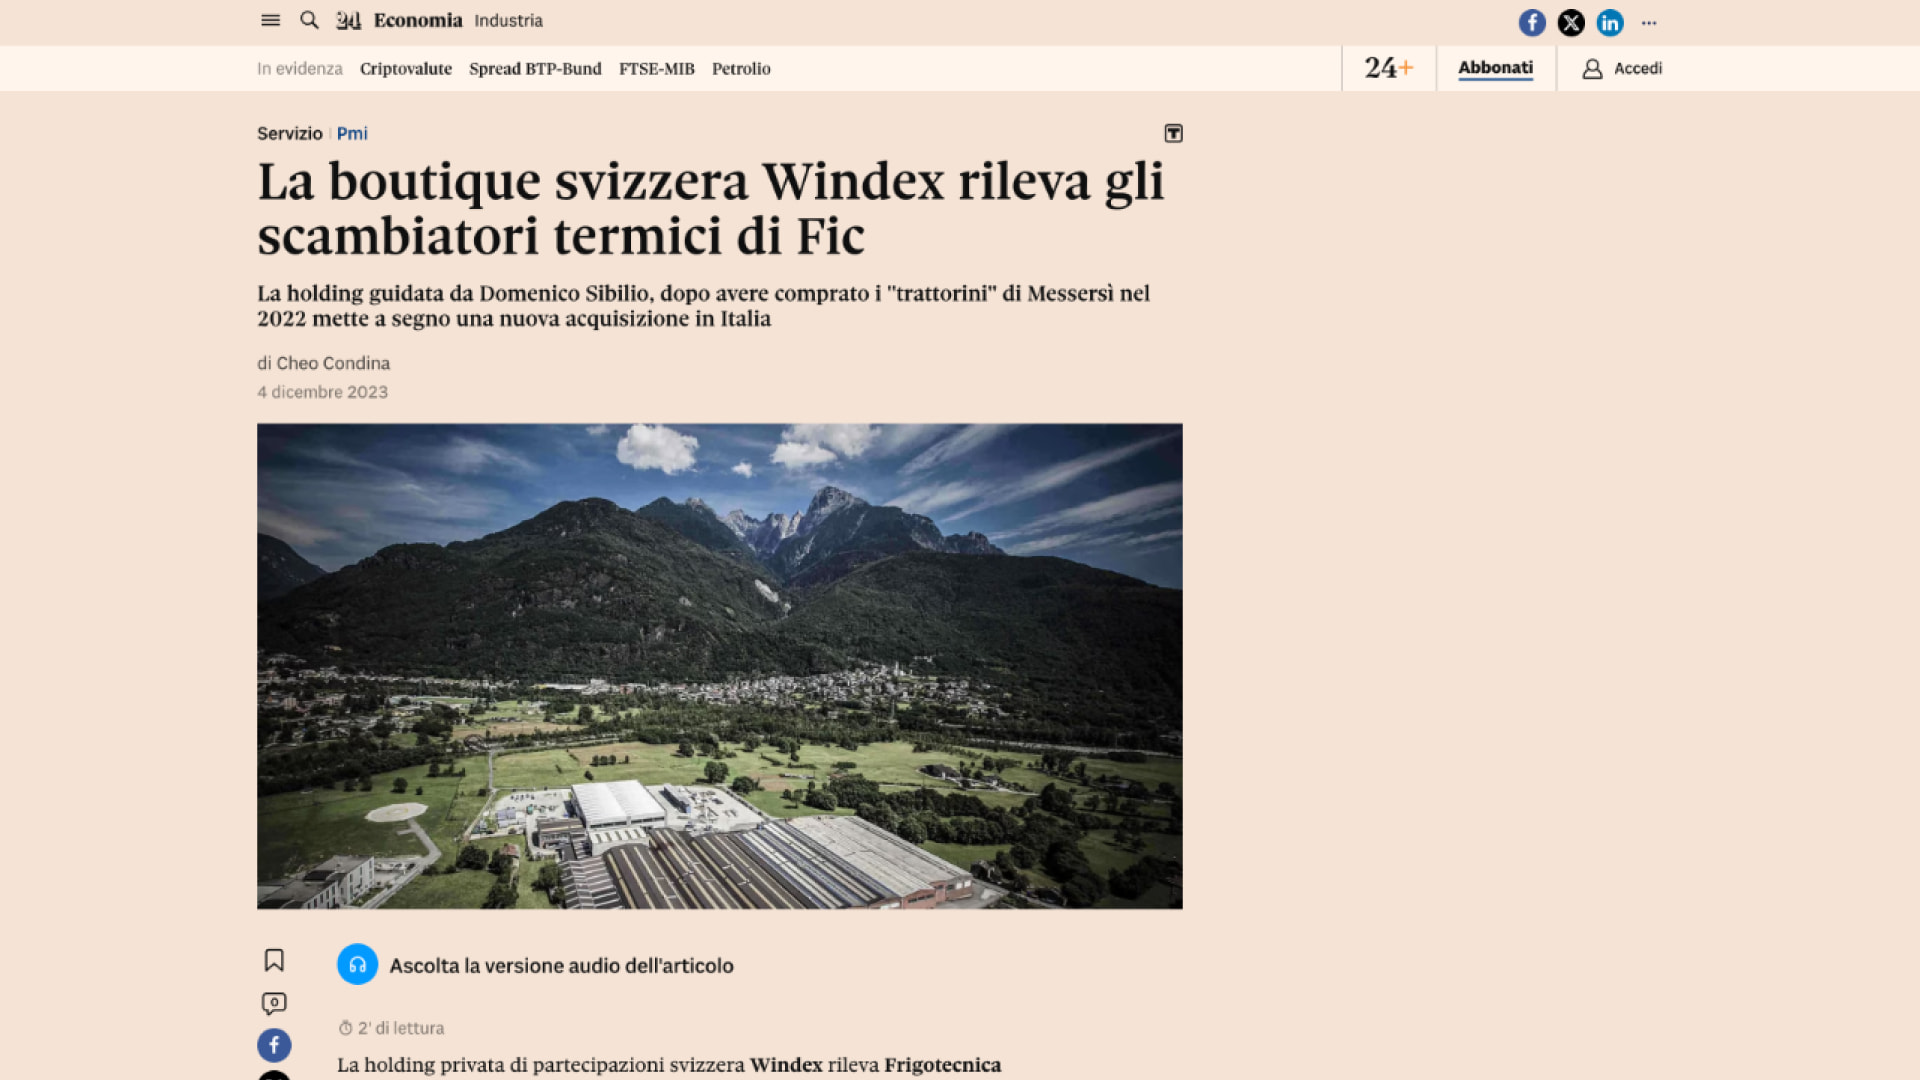 La boutique svizzera Windex rileva gli scambiatori termici di Fic